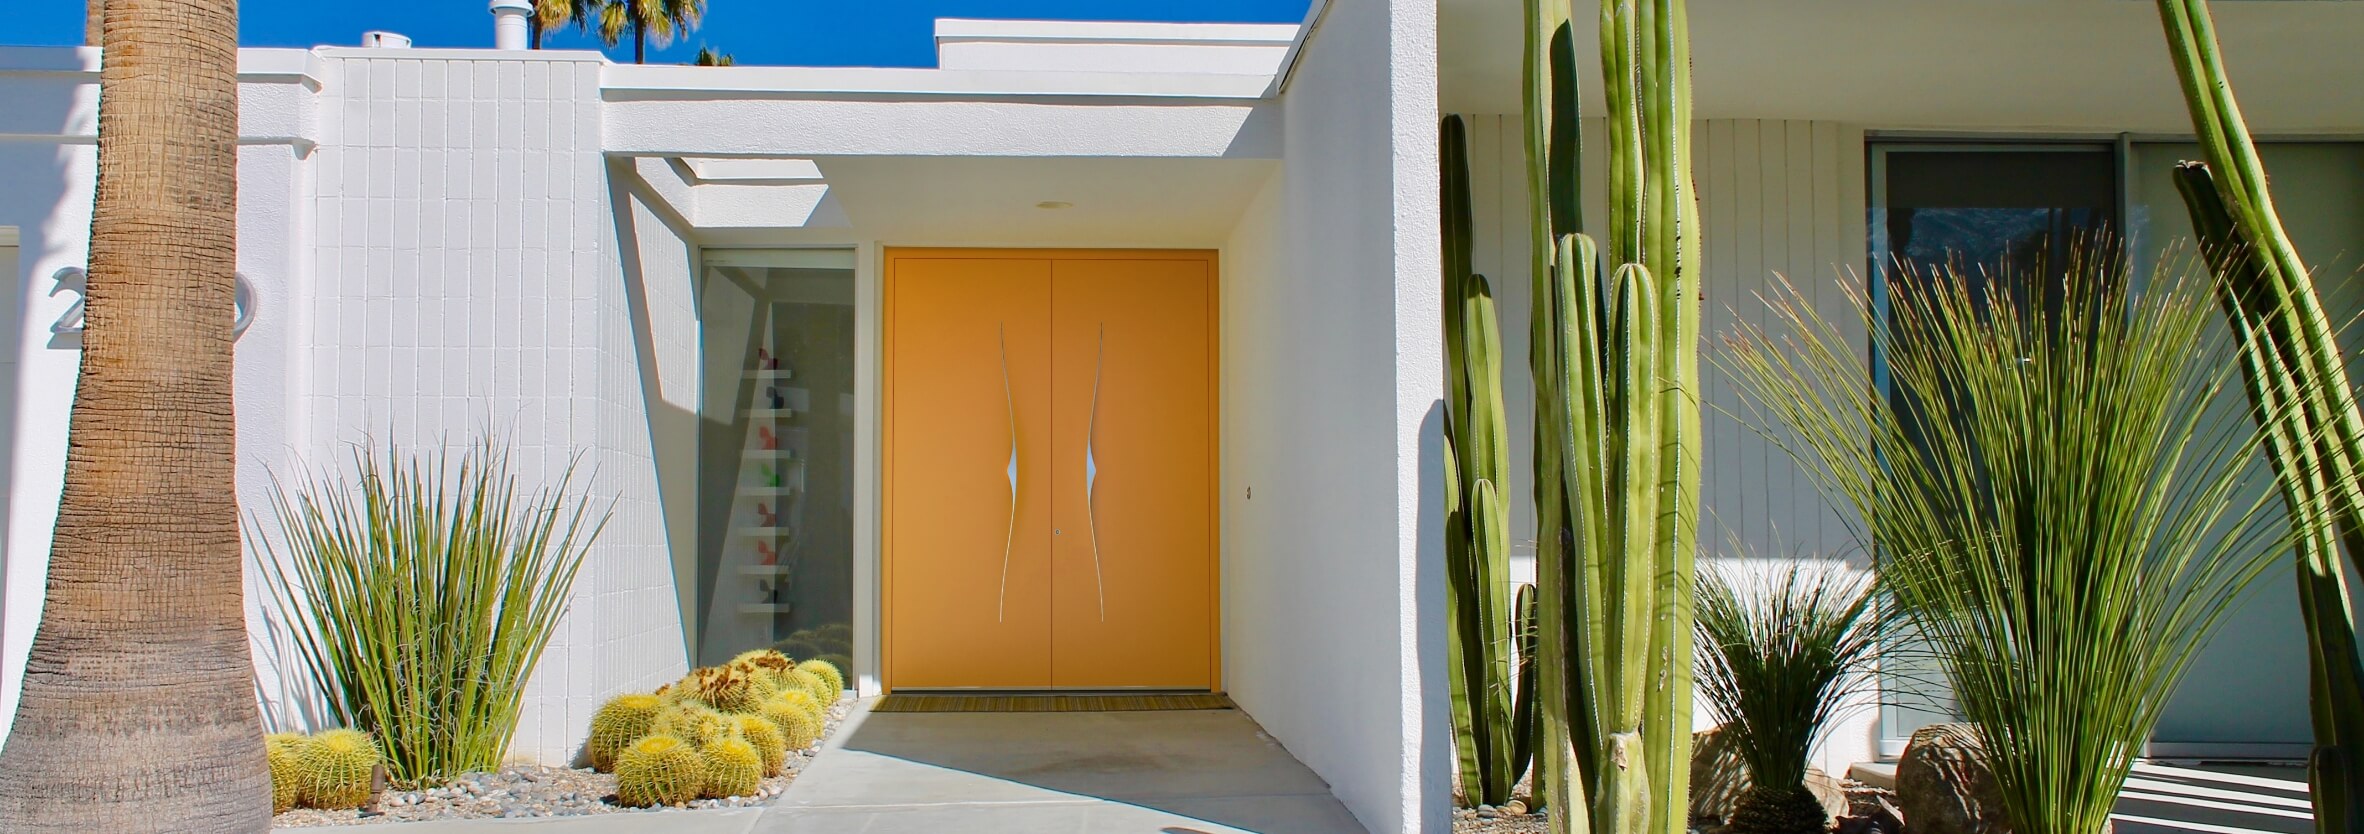 Modern yellow front door